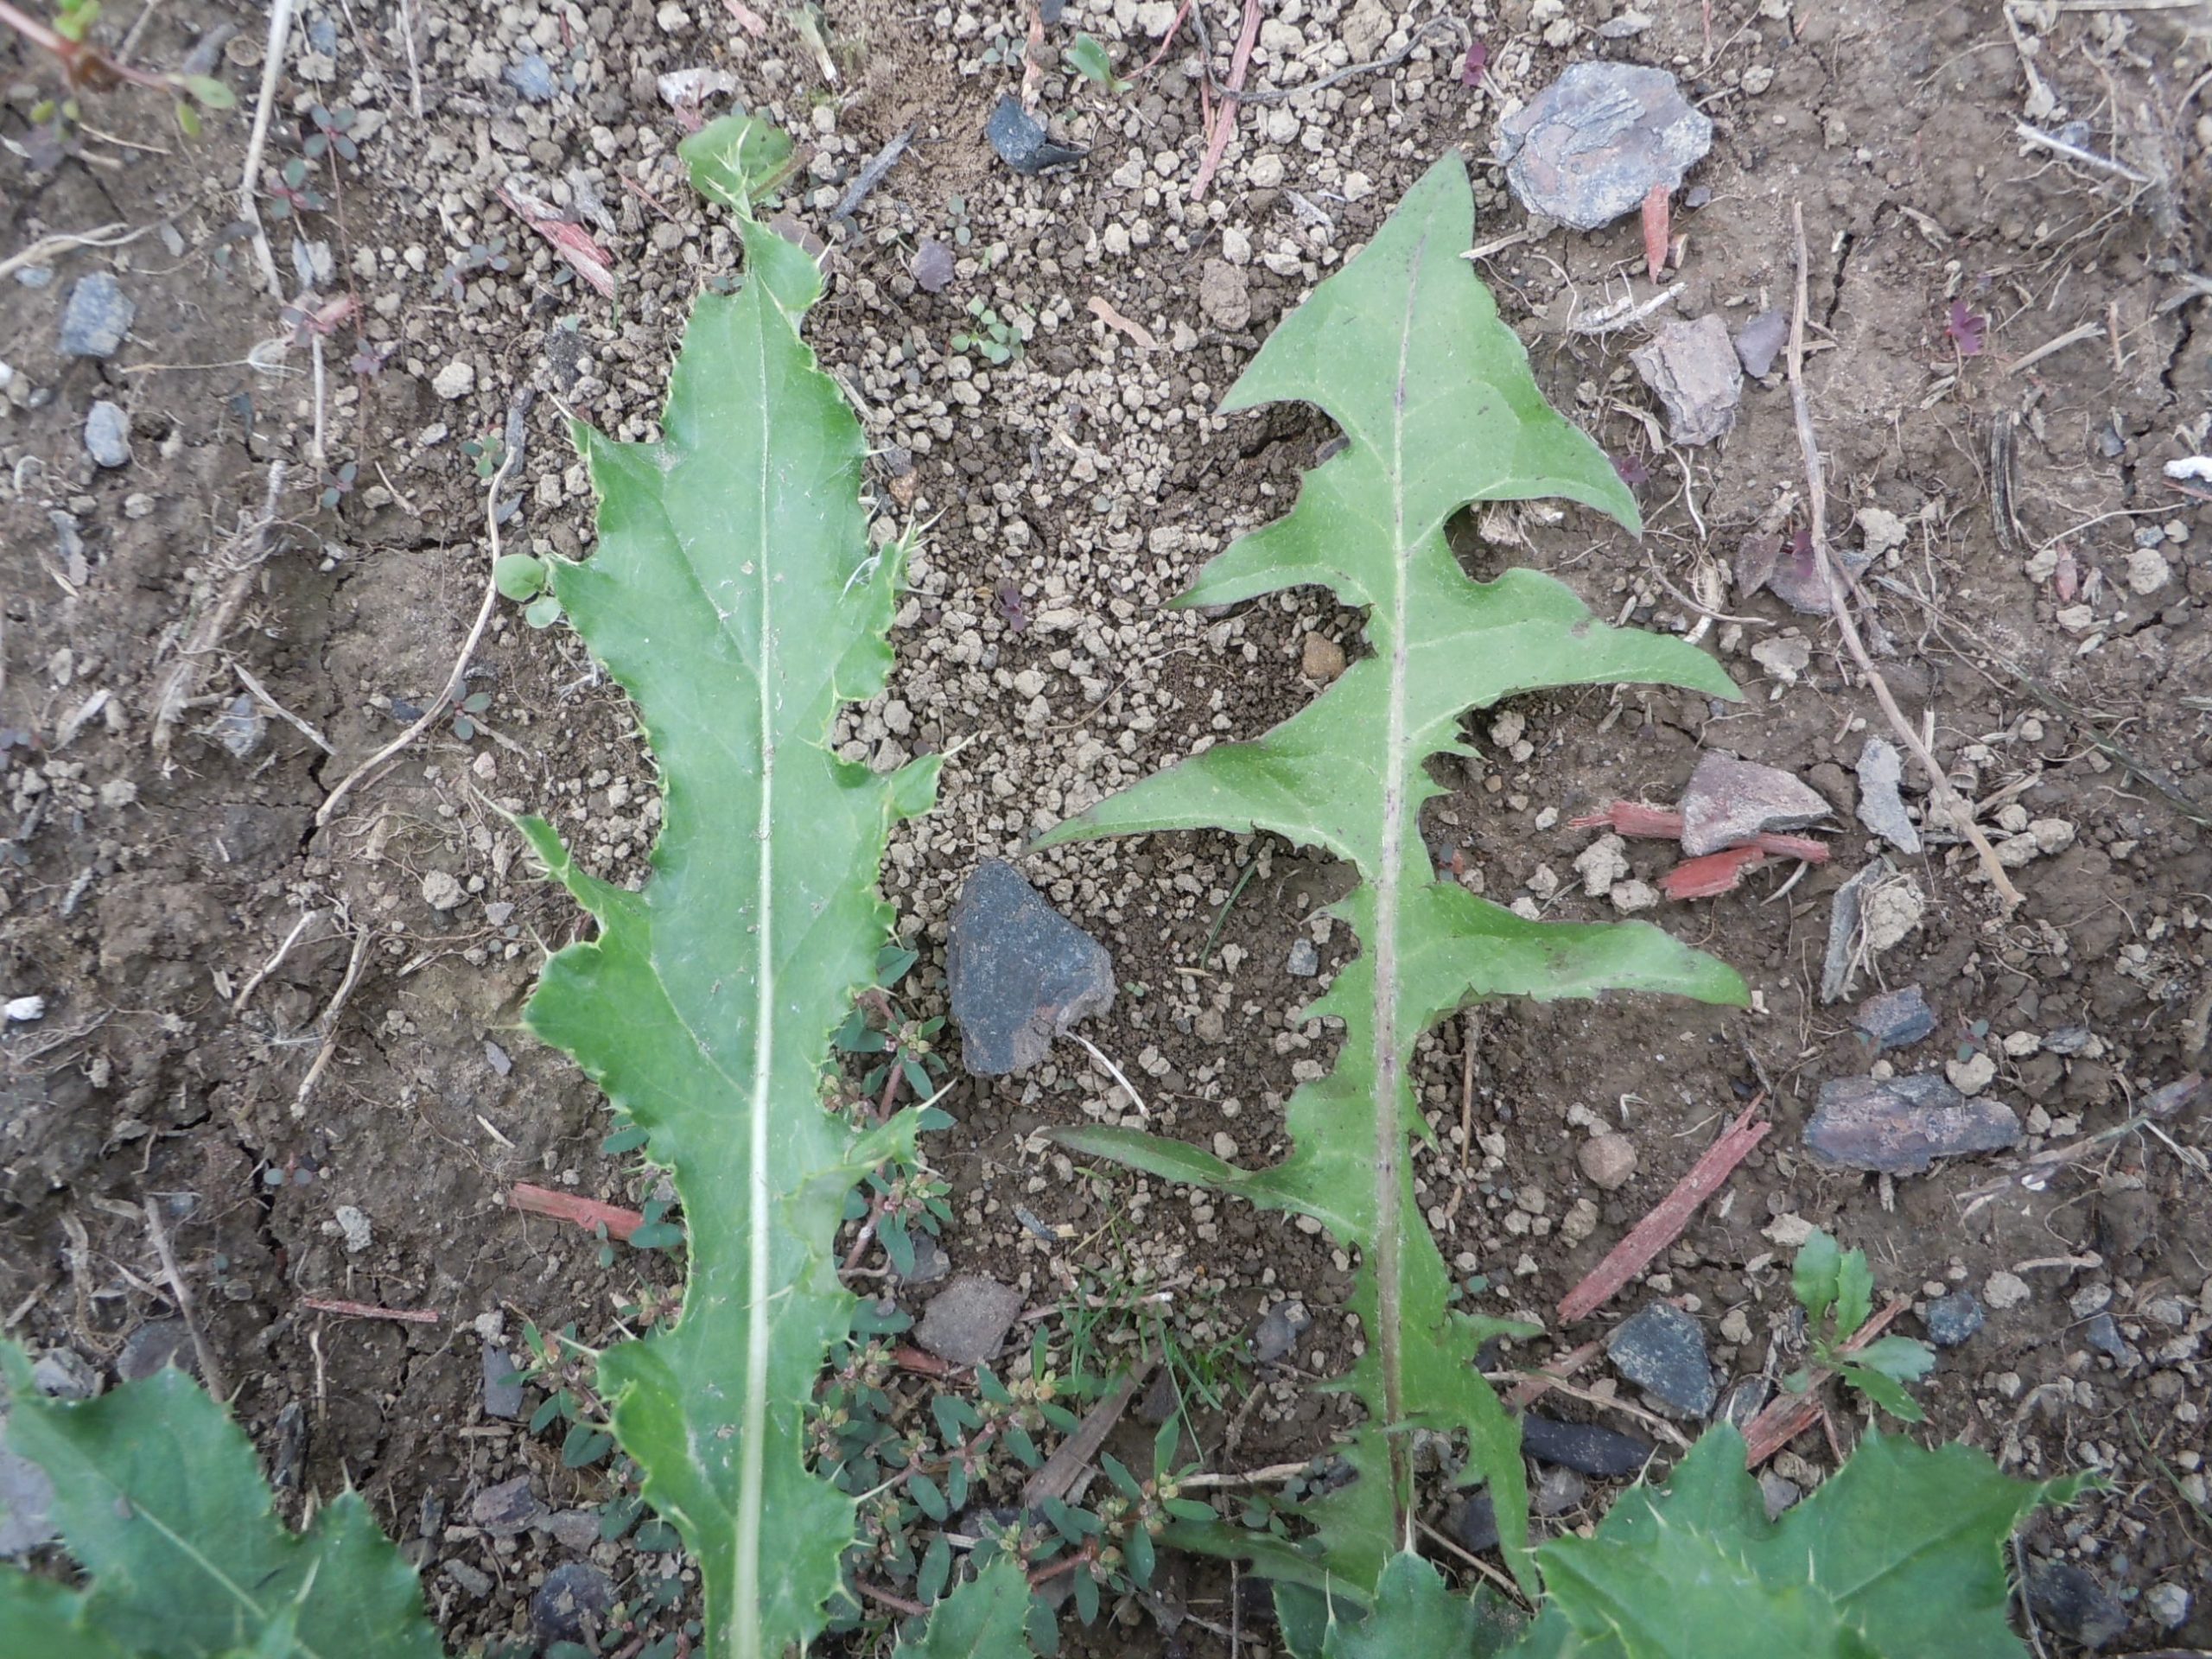 wild lettuce (lt) versus dandelion (rt)